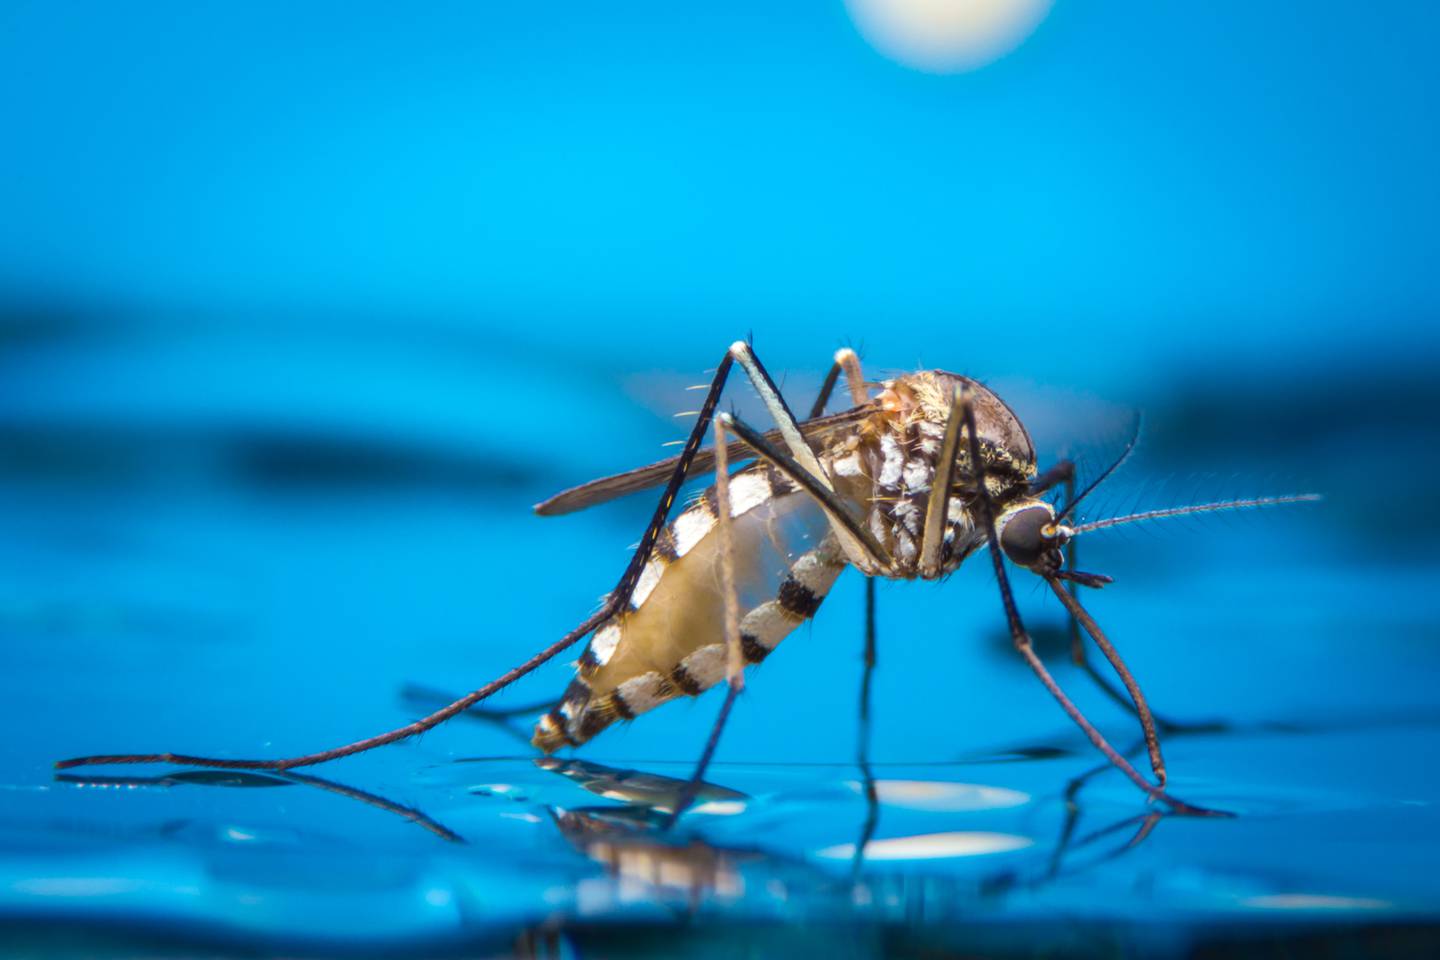 El dengue es una enfermedad endémica de zonas tropicales que provoca fiebres altas, dolores de cabeza, náuseas, vómitos, dolor muscular y, en los casos más graves, hemorragias que pueden causar la muerte.